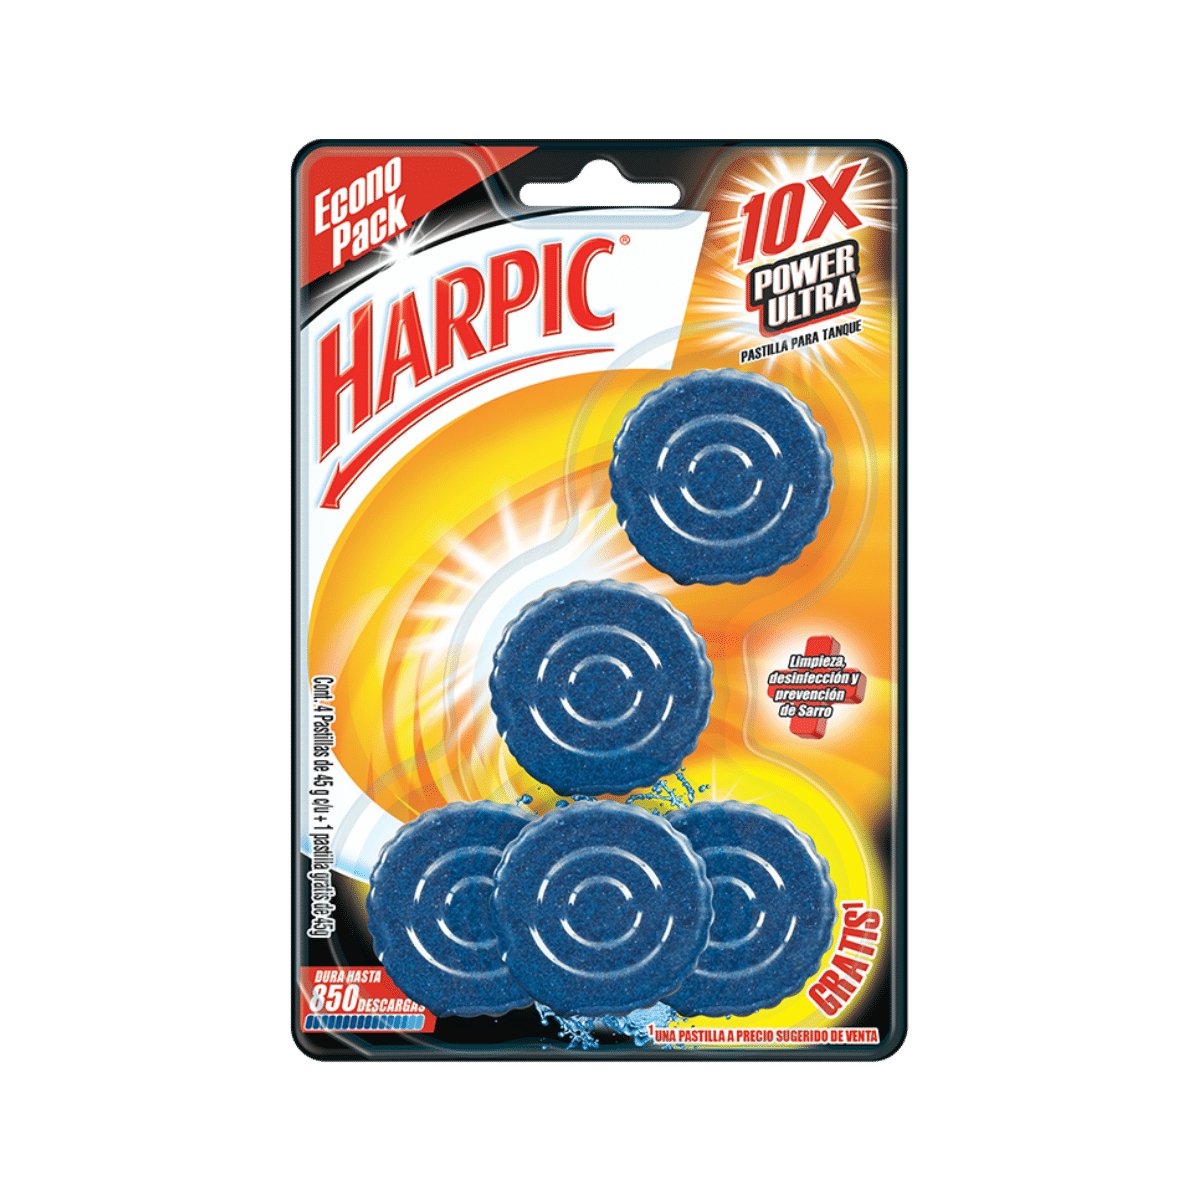 Harpic® Power Ultra® 10X Limpiador para inodoros - Karlan ¡Marca la Limpieza!RB-3039197